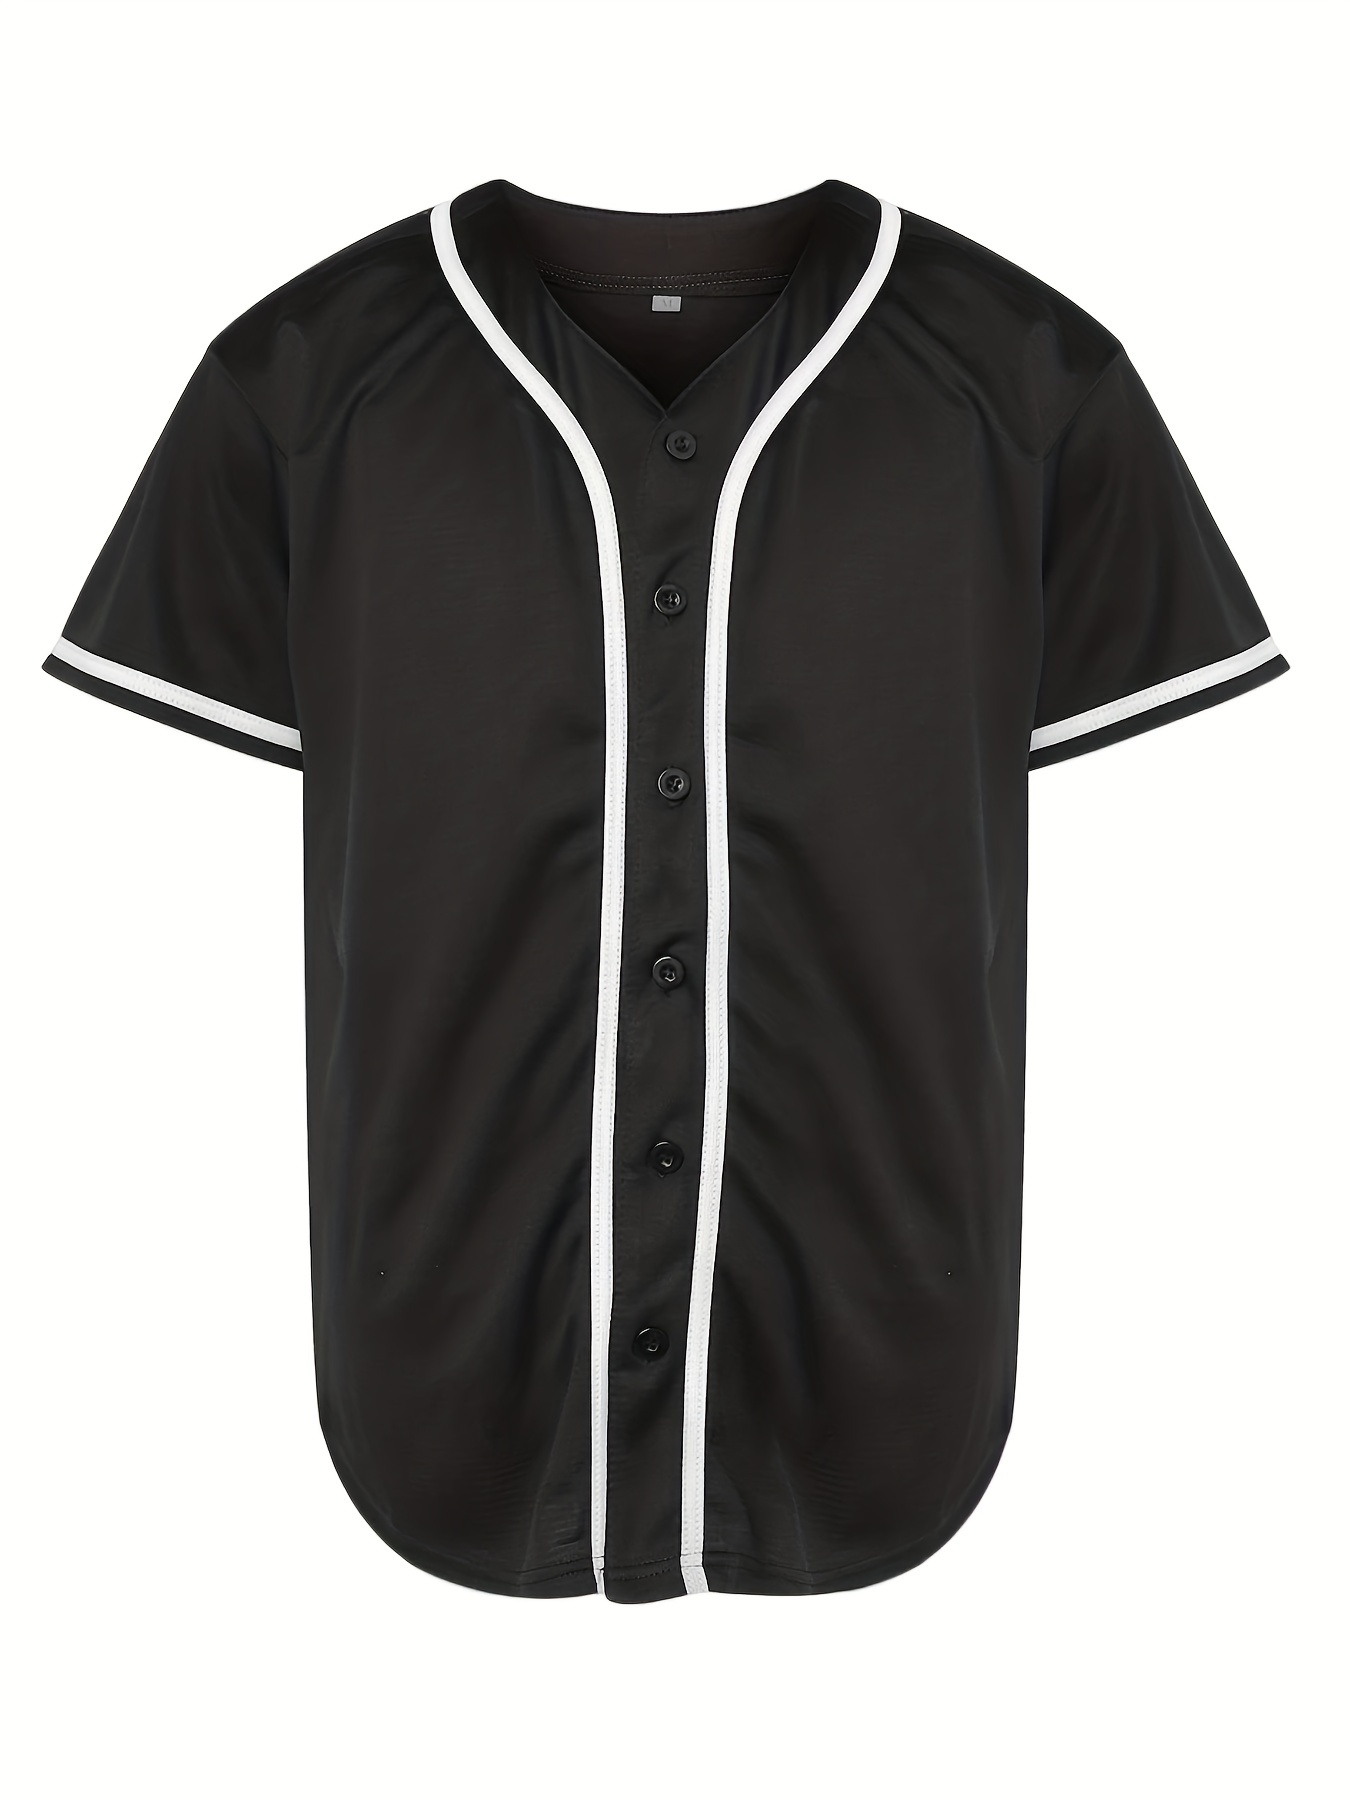 Mens Baseball Jersey Raglan Plain T Shirt Team Uniform Solid Hipster Button  Tee